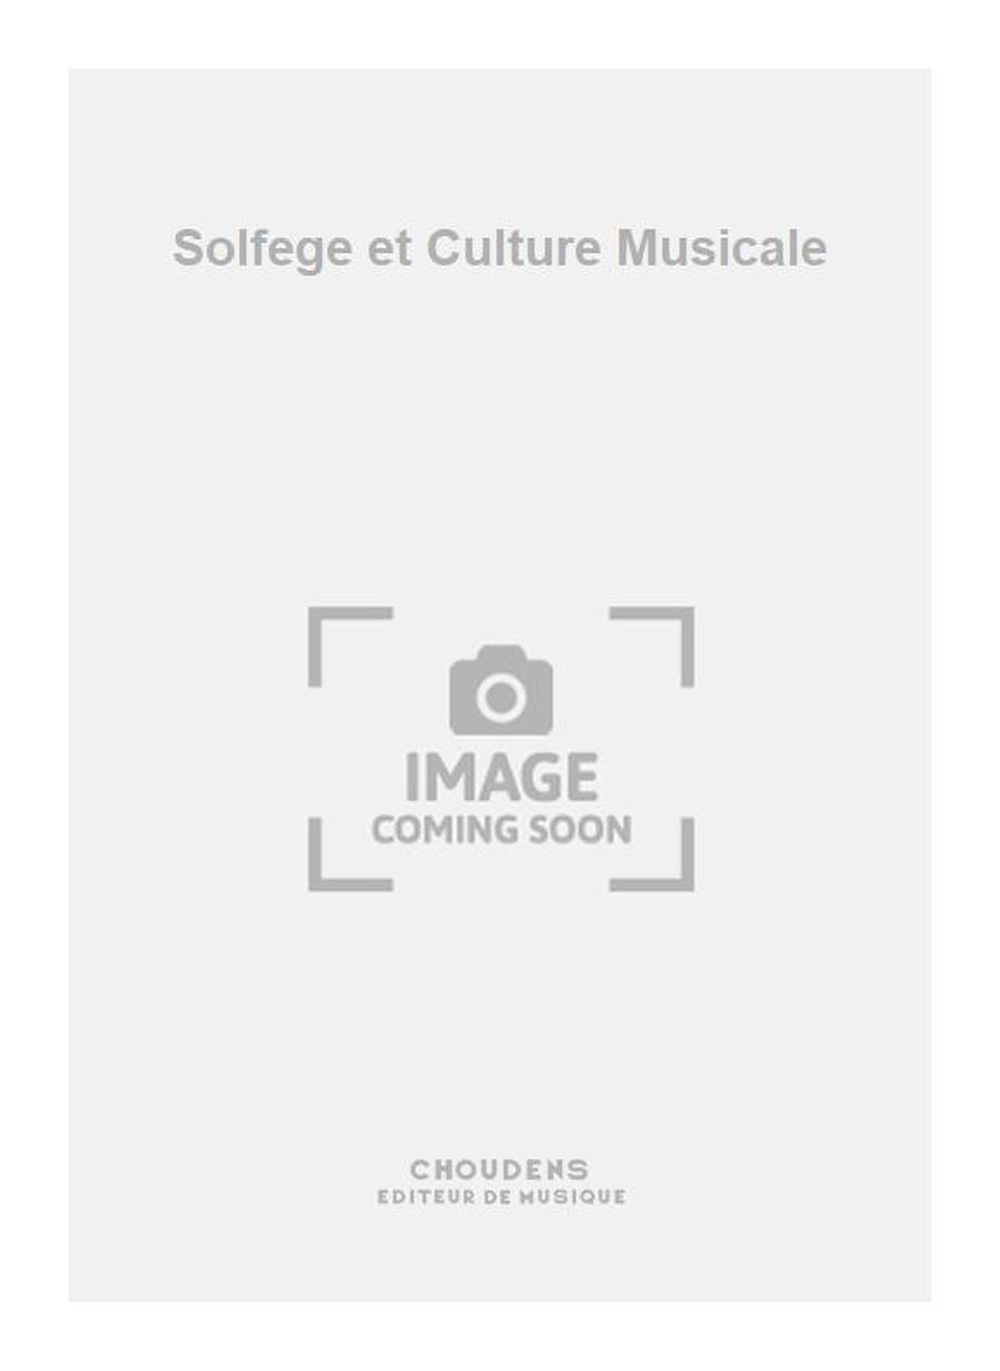 Filleul: Solfege et Culture Musicale